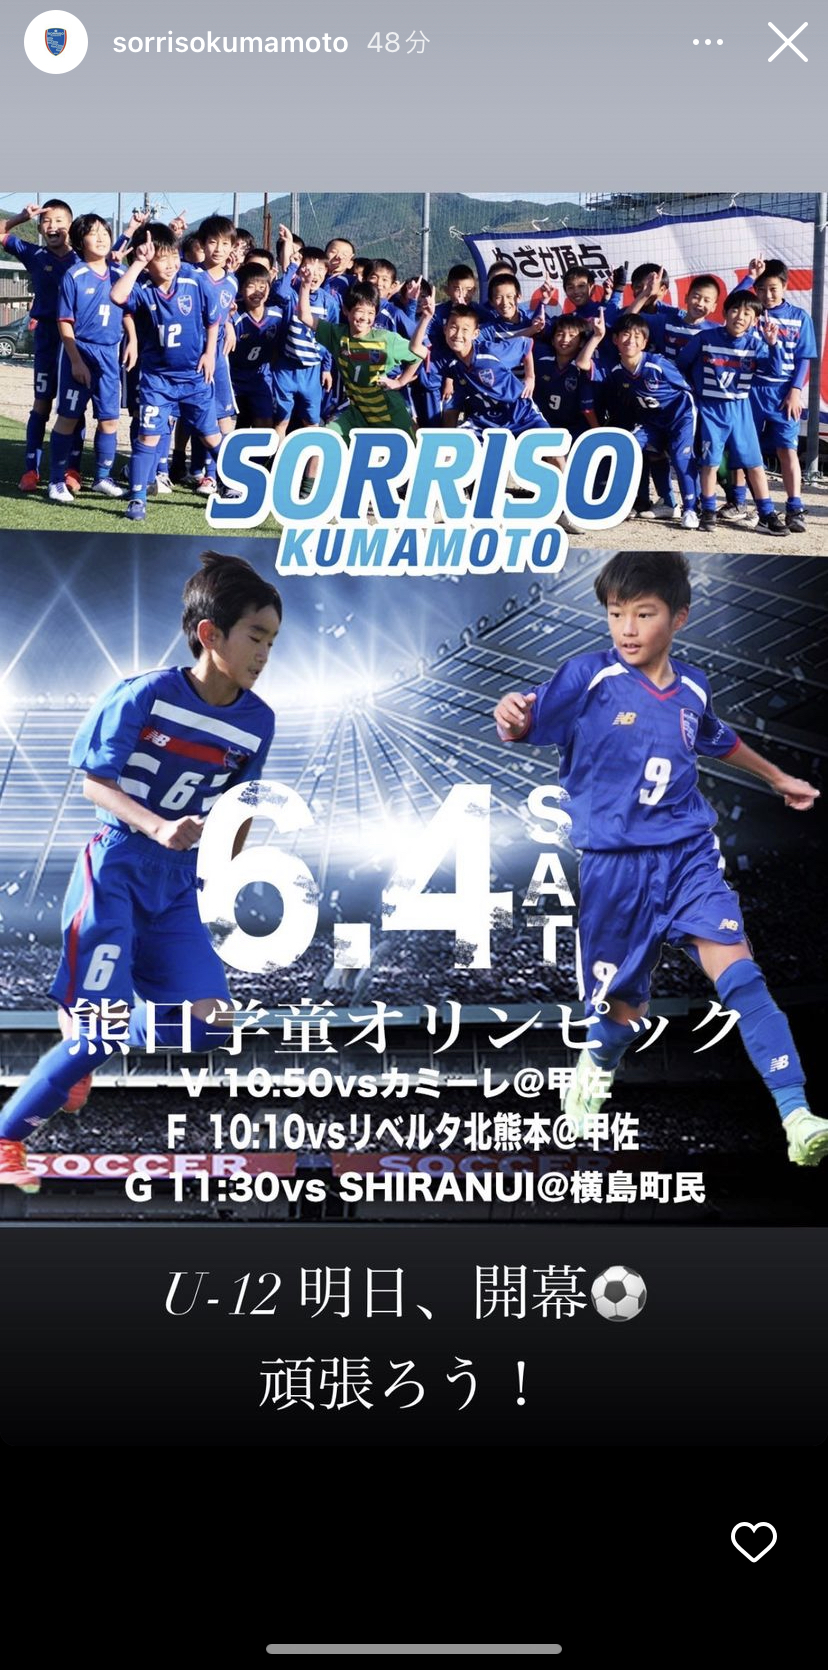 三角のブログ ソレッソ熊本 ソレッソ熊本 熊本のサッカークラブ